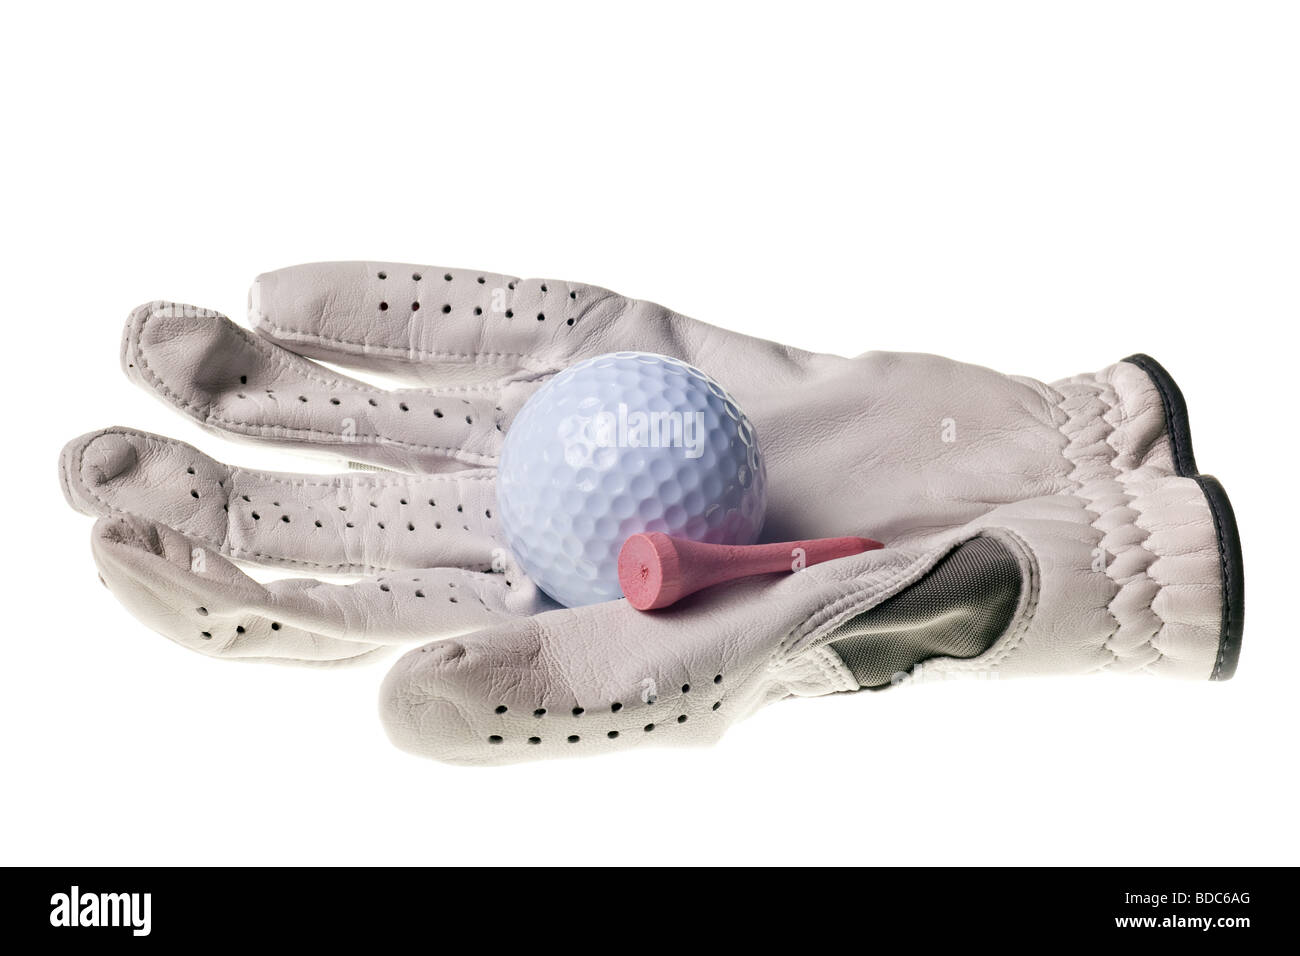 Golfball und Handschuh auf einen rein weißen Hintergrund isoliert Stockfoto